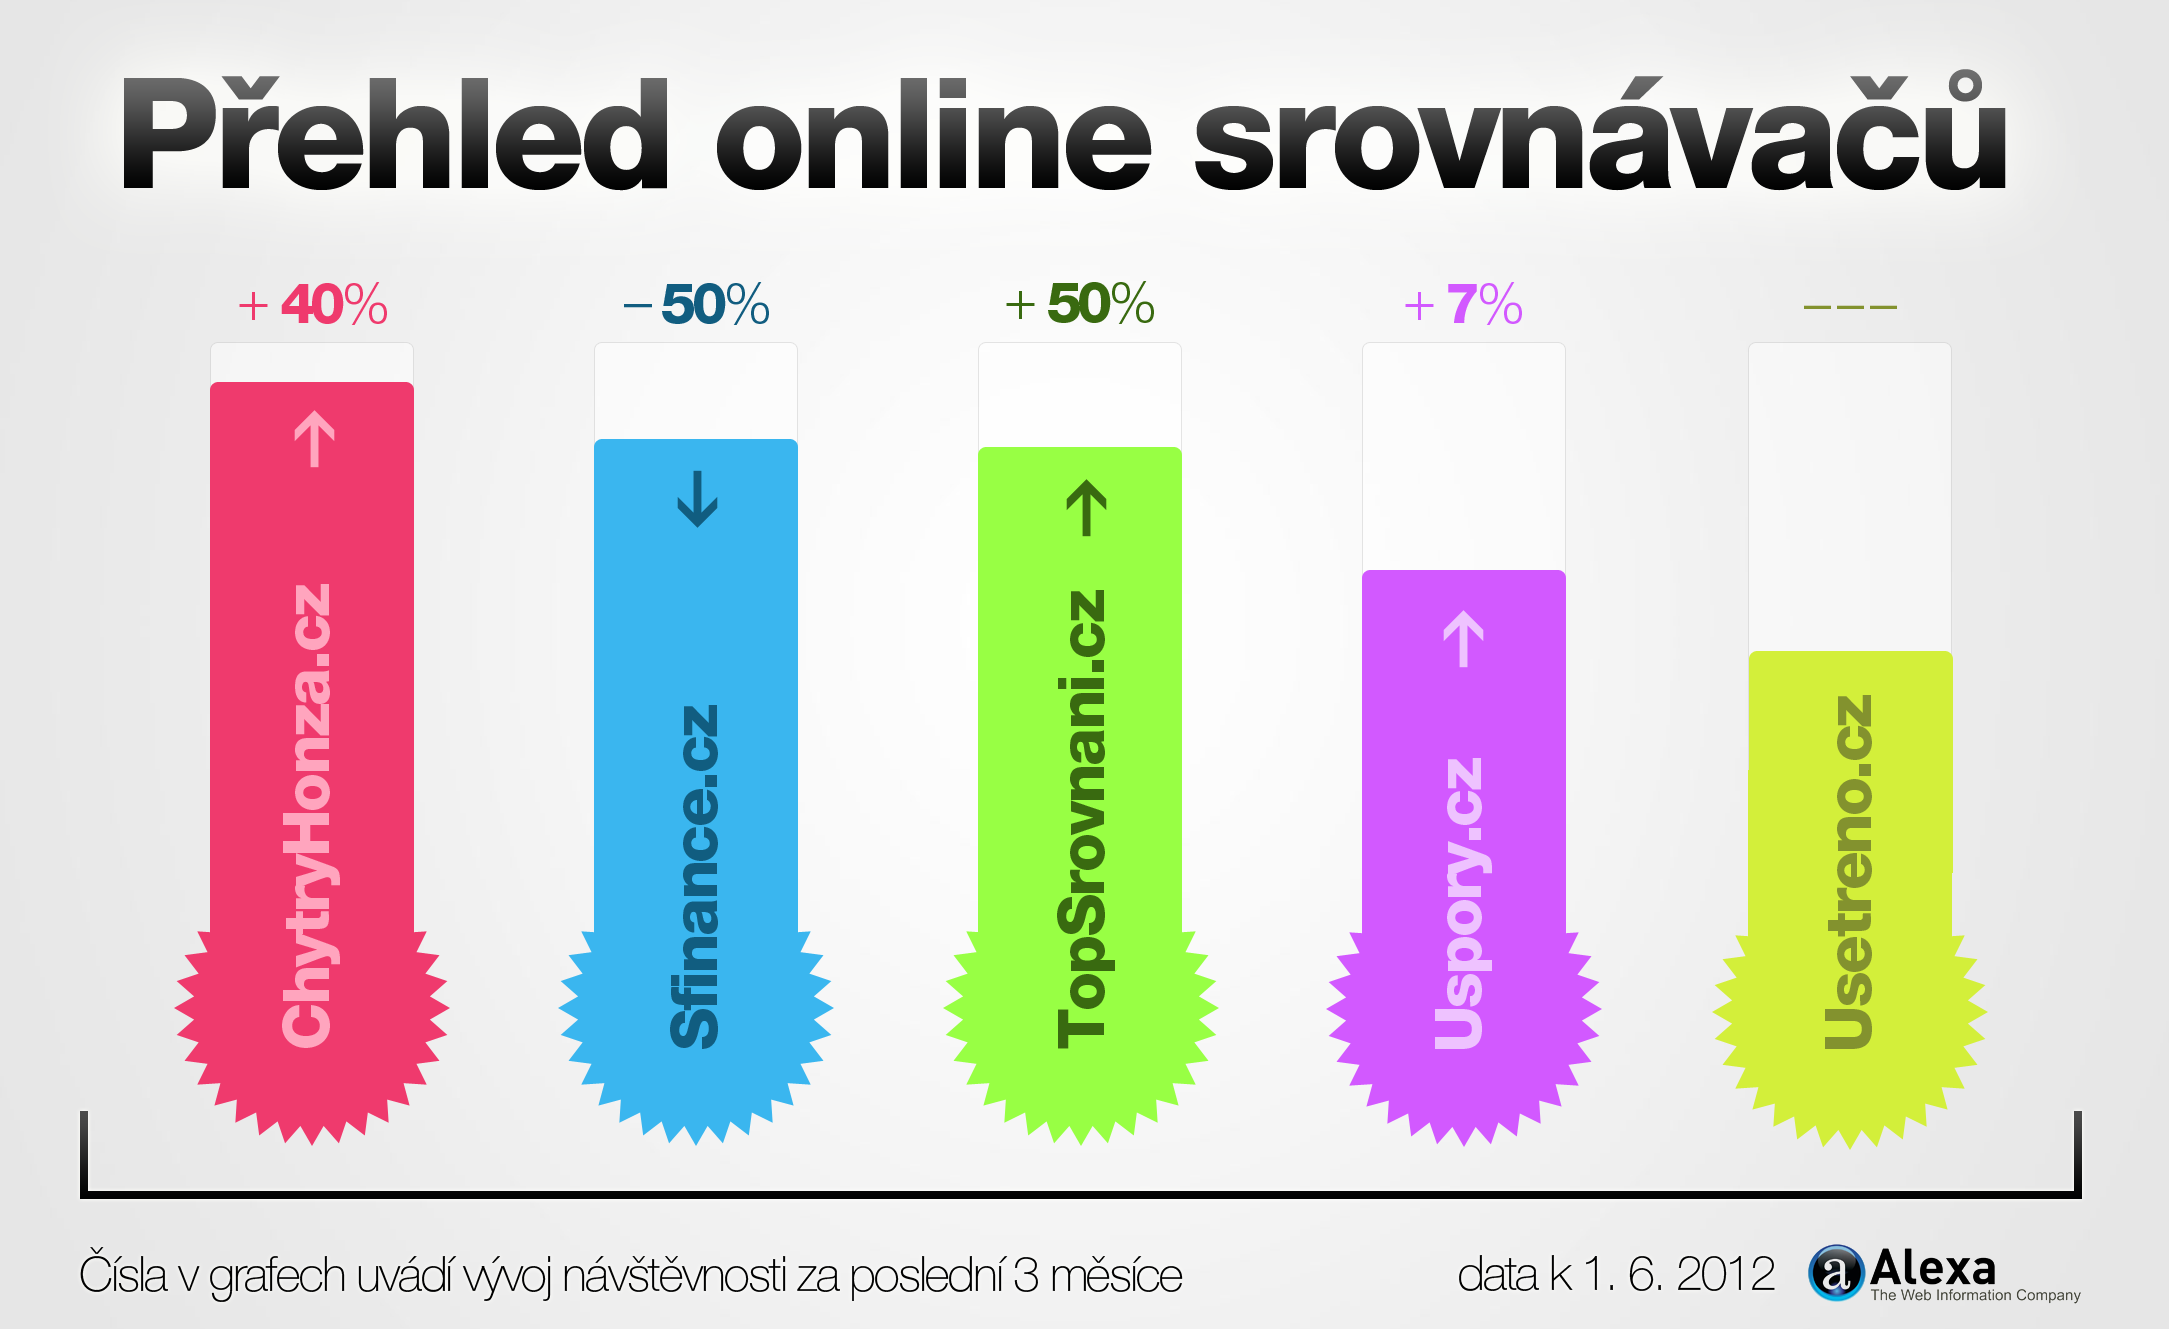 prehled_online_srovnavacu